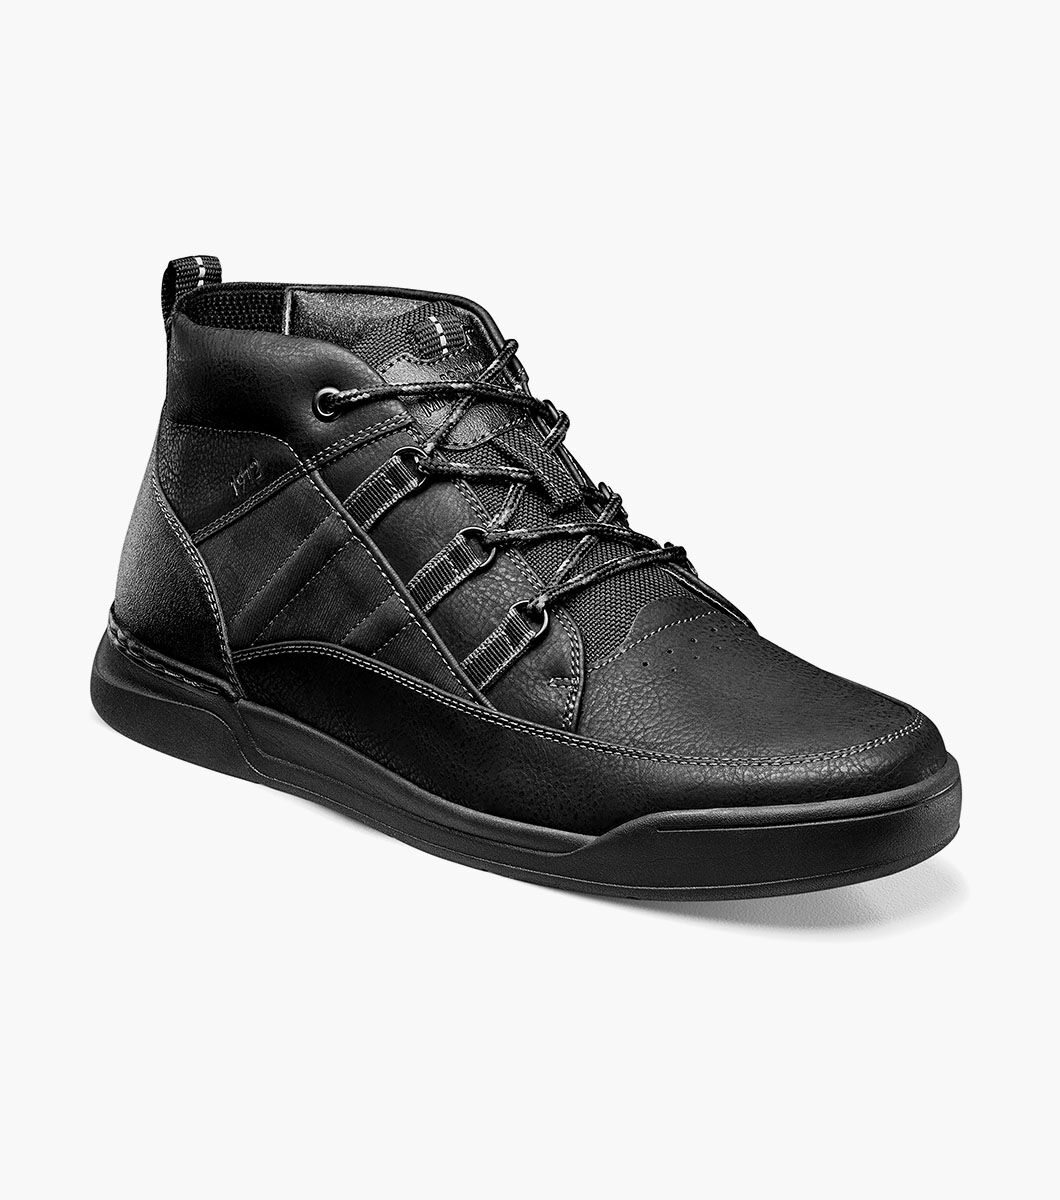 Nunn Bush Shoes Tour Work Moc Toe Sneaker Boot Black Size 10